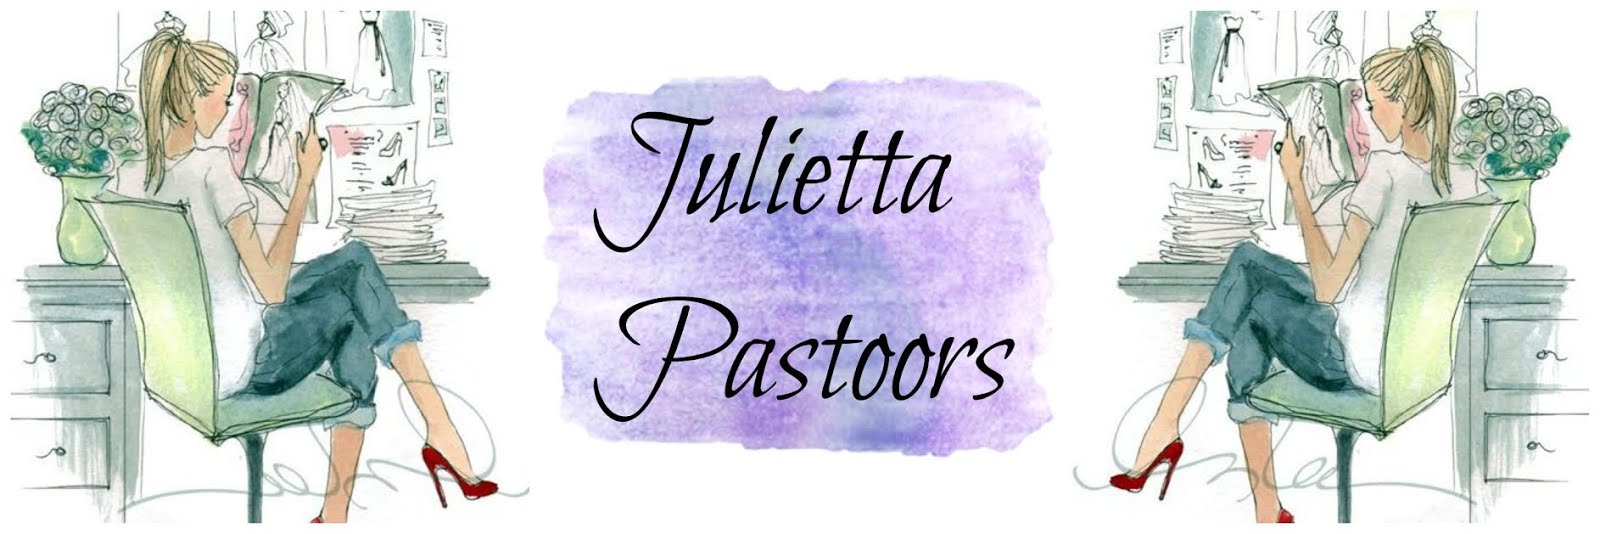 Julietta Pastoors